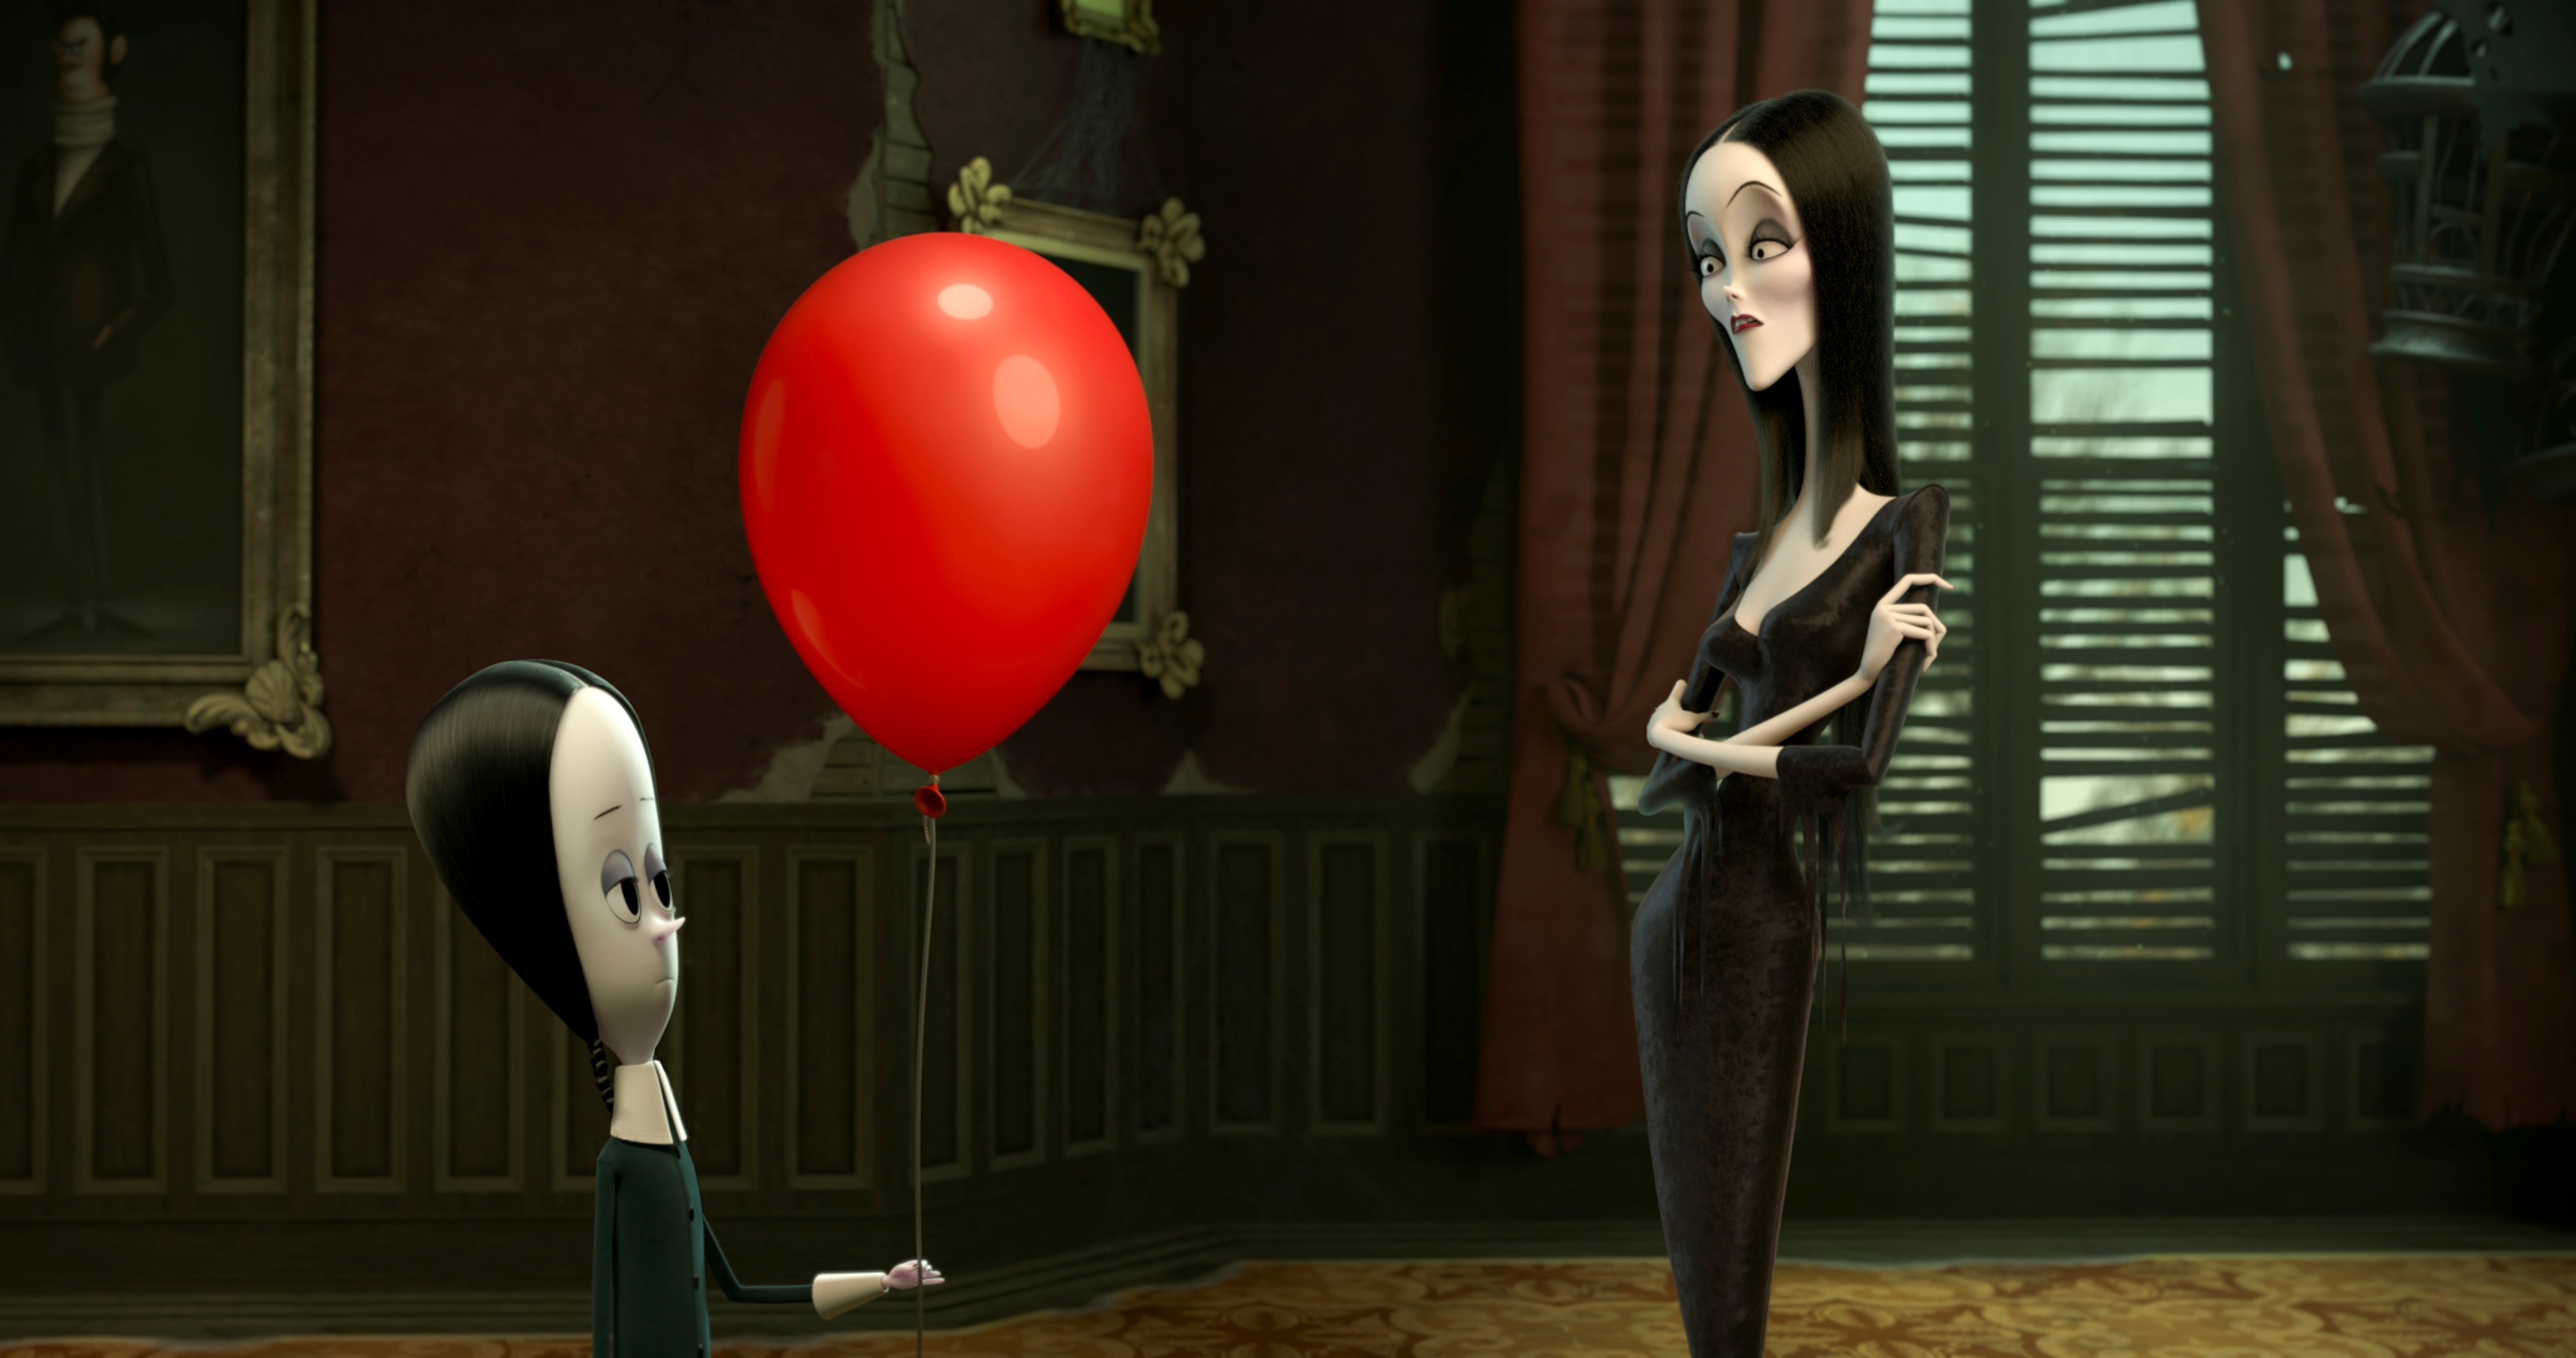 Filme animado de A Família Addams estreia em 31 de outubro (Foto: Divulgação/Universal)